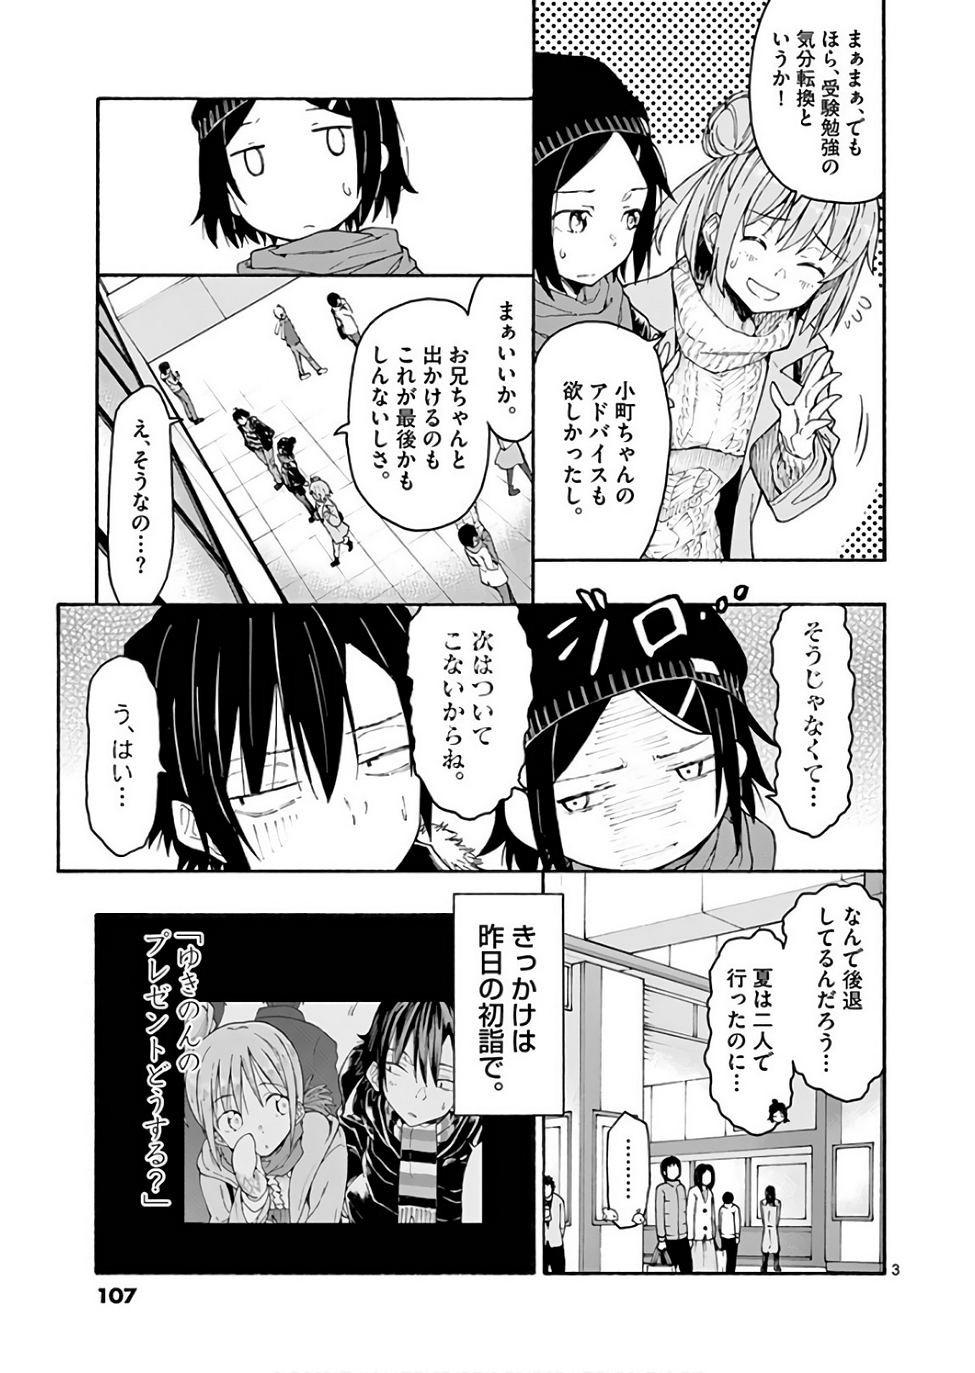 Yahari Ore no Seishun Rabukome wa Machigatte Iru. @ Comic - Chapter 74 - Page 3